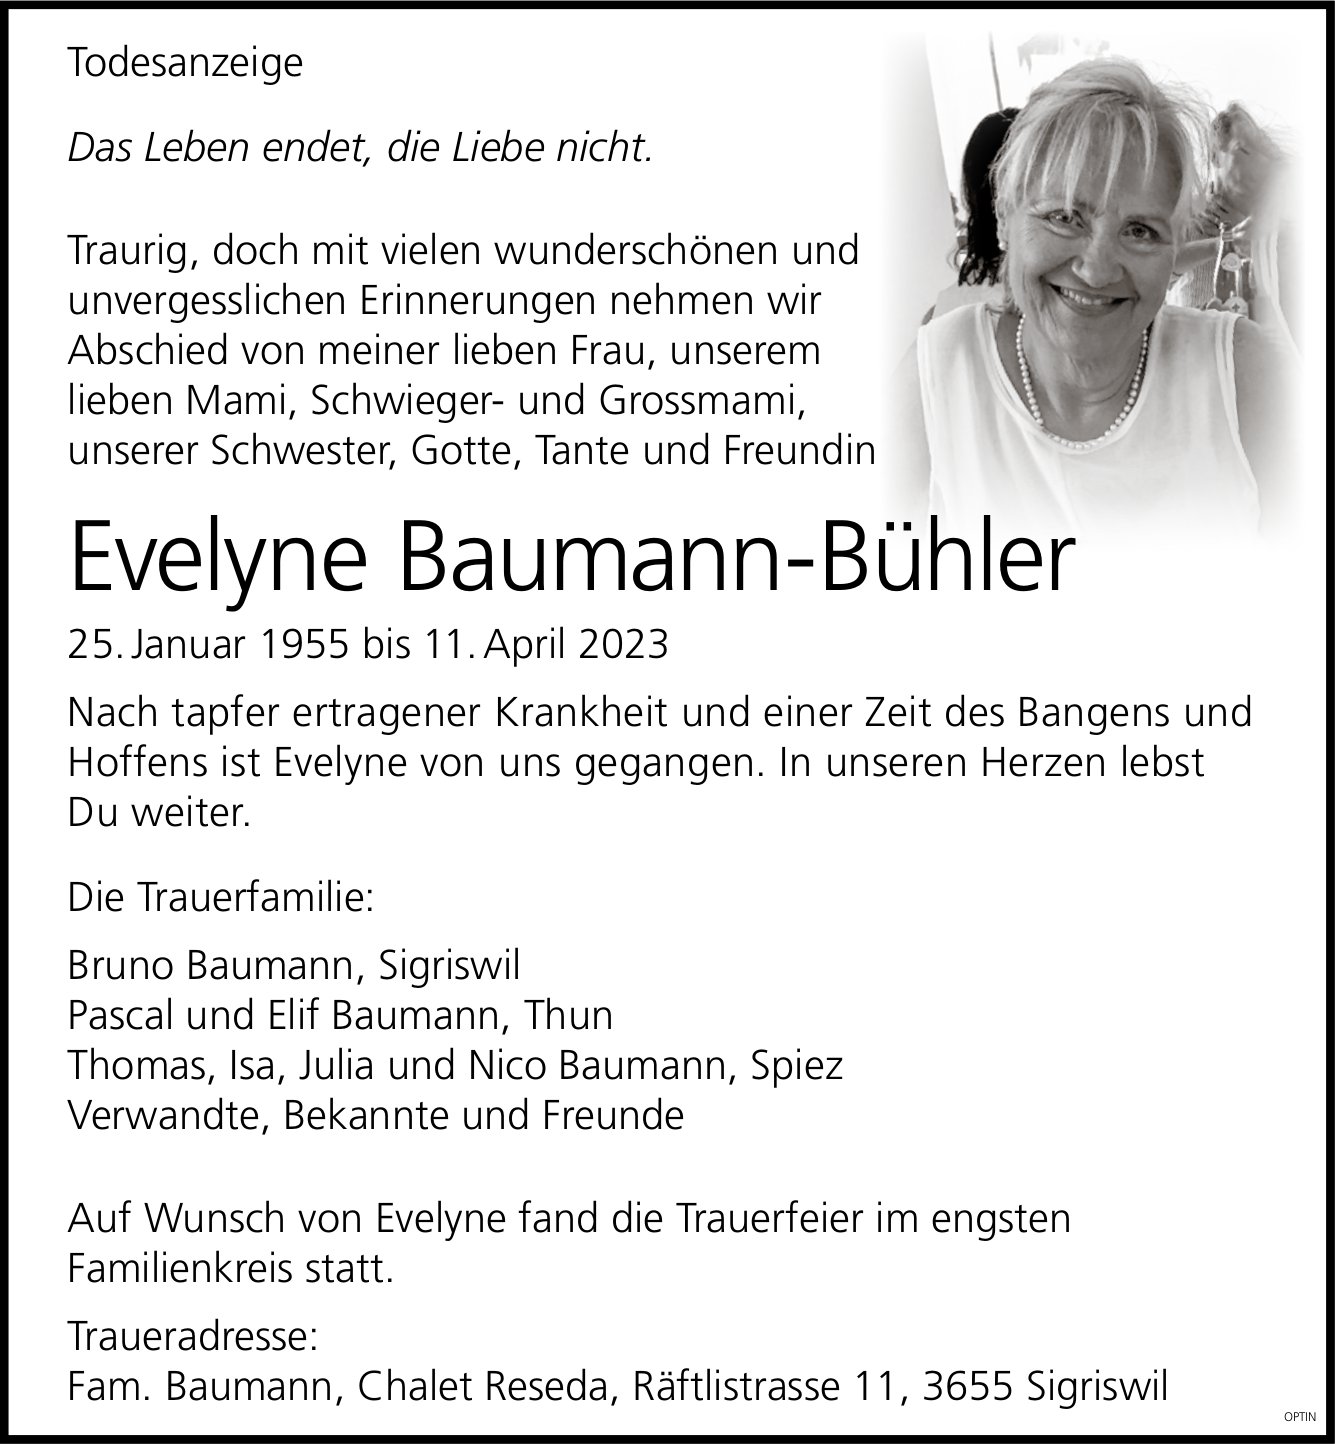 Evelyne Baumann-Bühler, April 2023 / TA